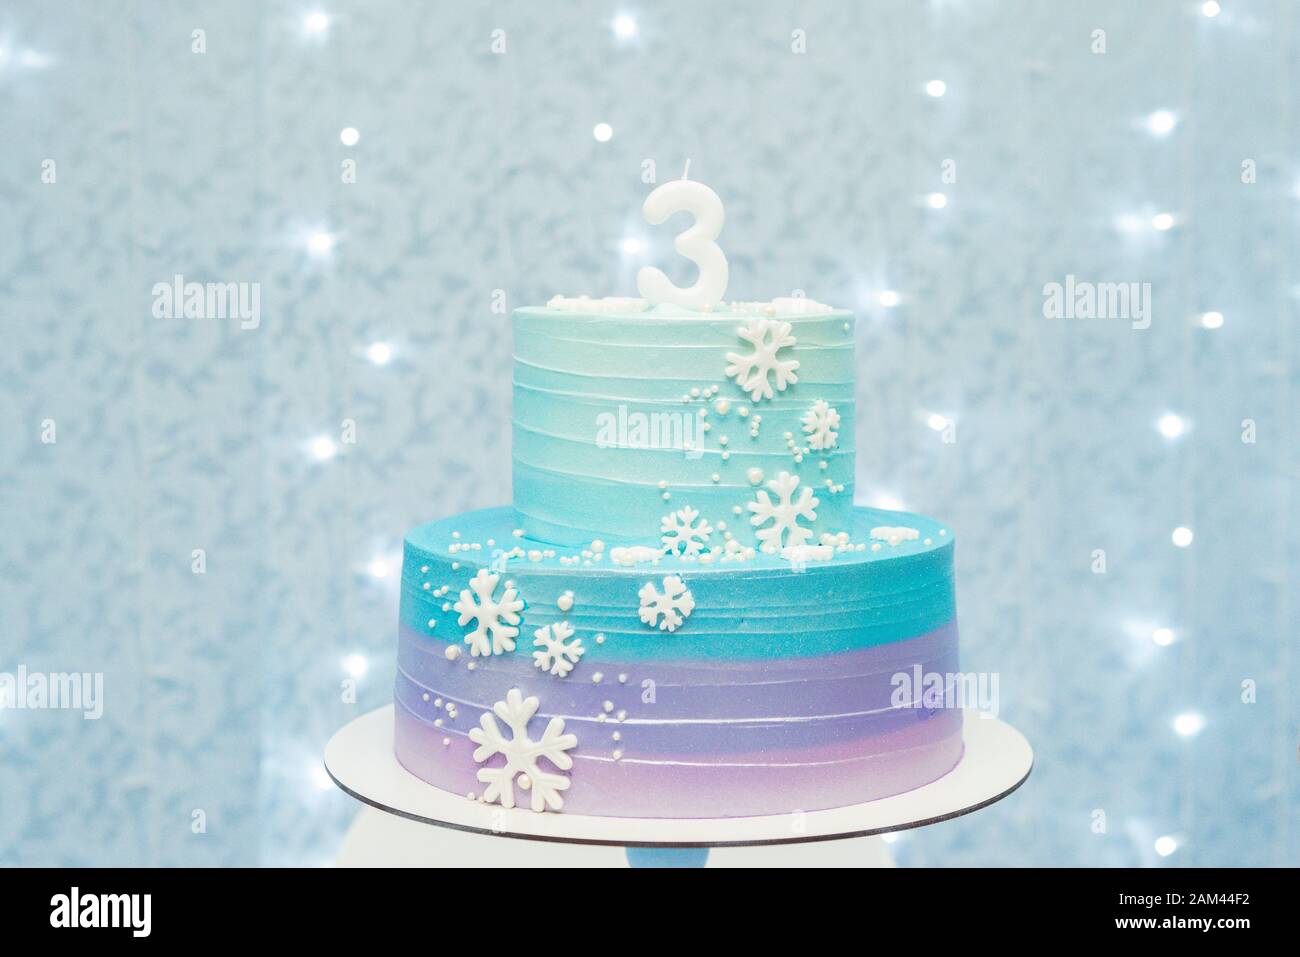 Kuchen zeigen Details von wunderbarem blauem und violettem Geburtstagskuchen, der mit Schneeflocken dekoriert ist. Zweistufiger Kuchen auf blauem Hintergrund mit unfokussierten Lichtern. Stockfoto